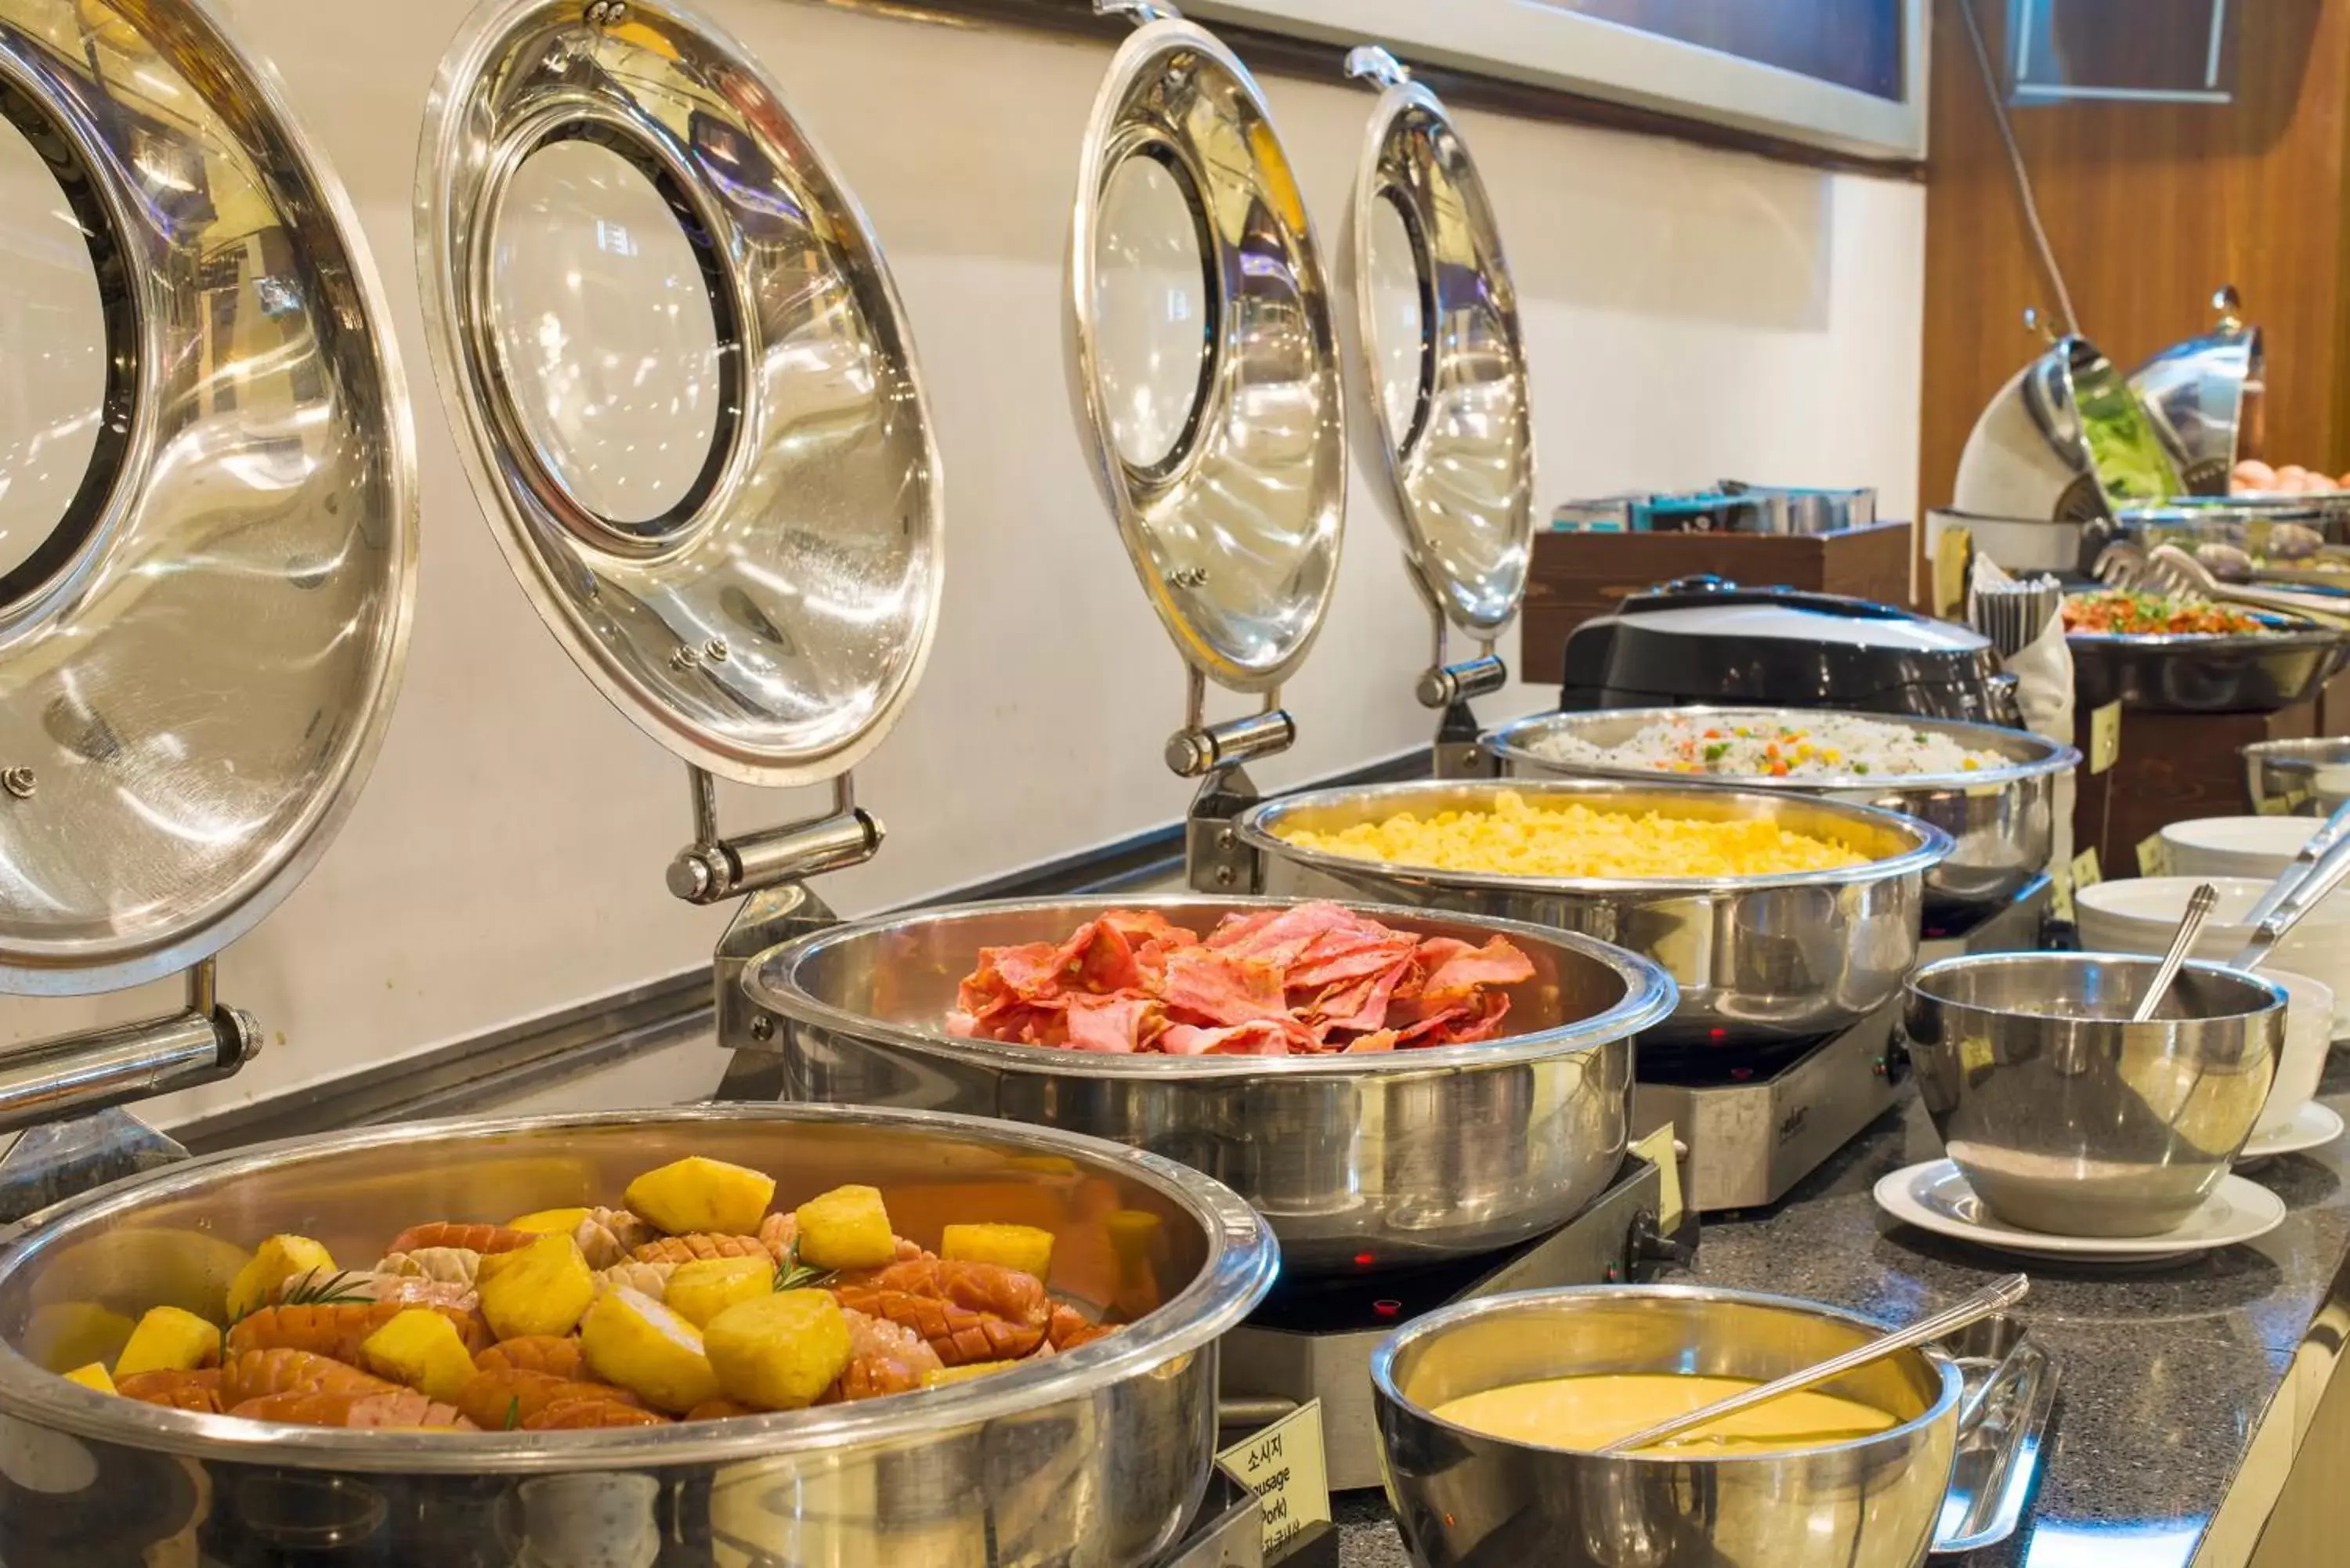 Buffet breakfast in Best Western Premier Incheon Airport Hotel